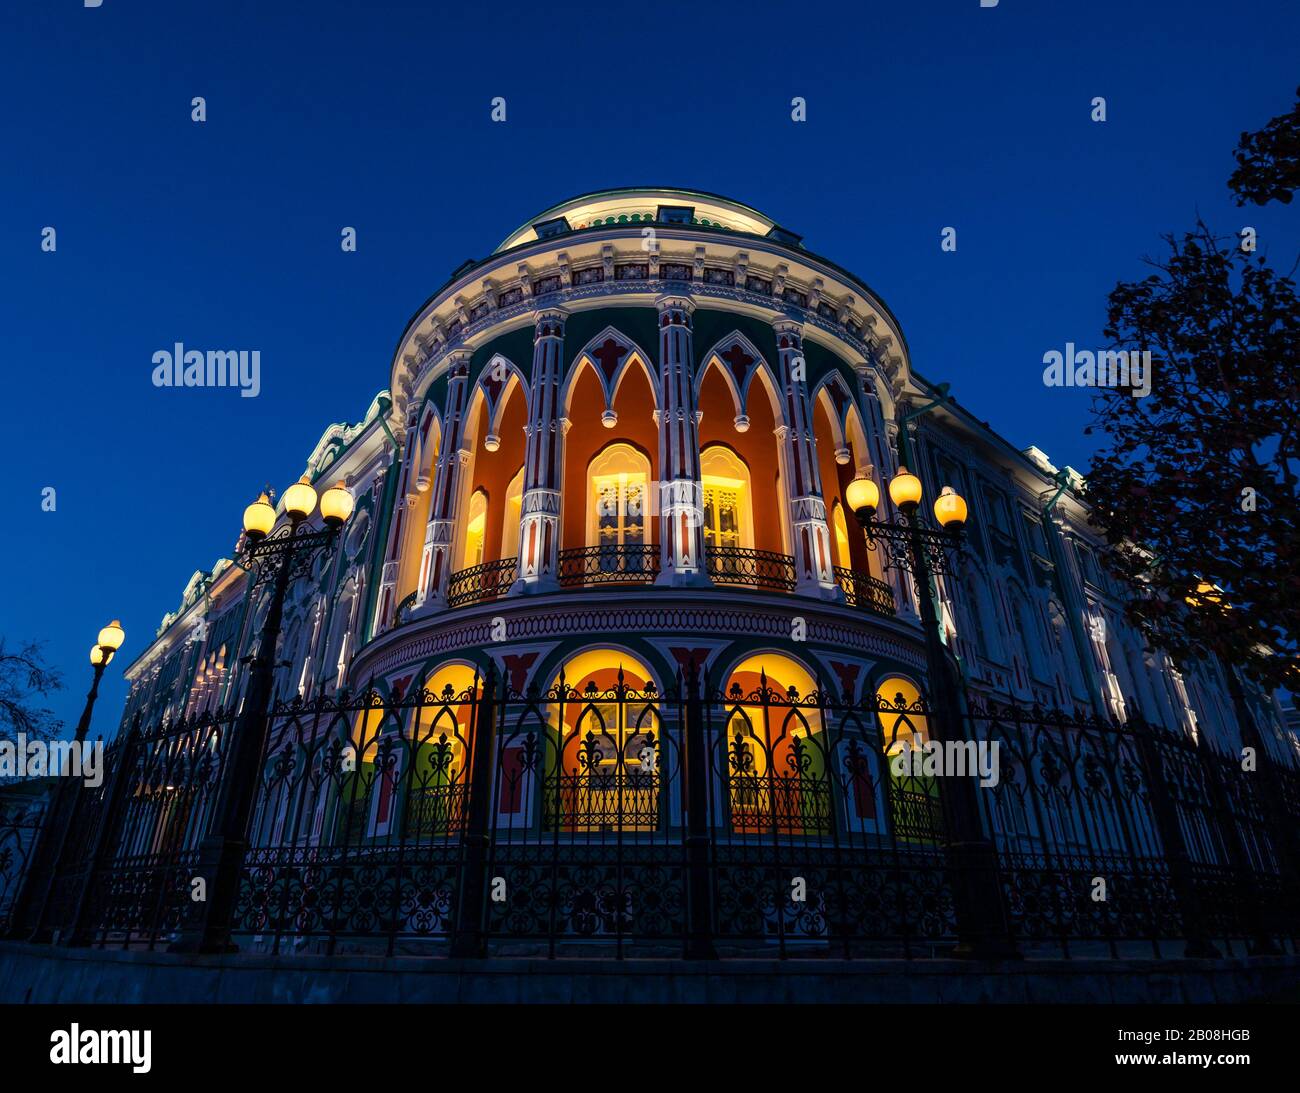 Maison historique colorée de Sevastyanova éclairée la nuit, avenue Lenin, Yekaterinburg, Sibérie, fédération de Russie Banque D'Images